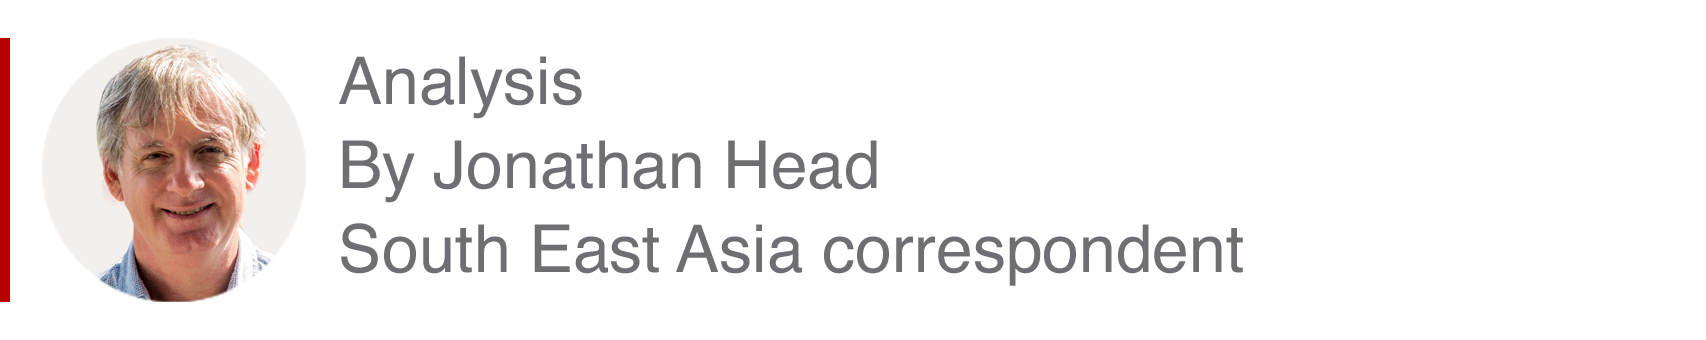 Аналитическая вставка Джонатана Хэда, корреспондента по Юго-Восточной Азии